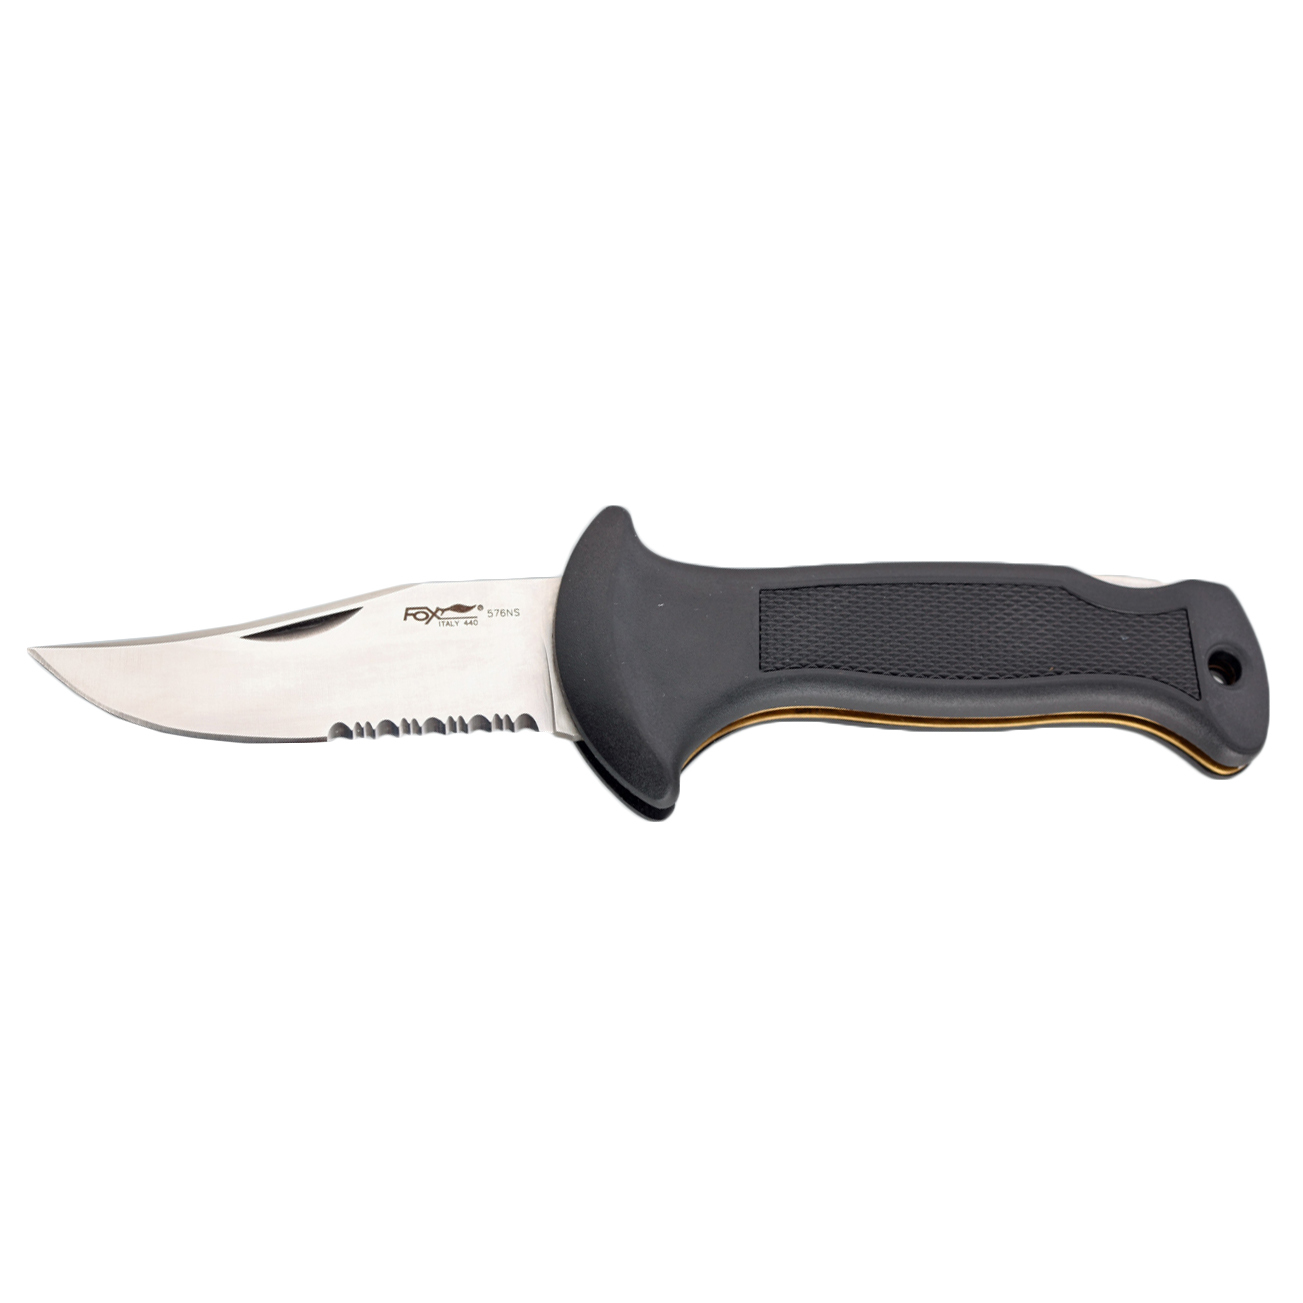 Складной нож Fox Forest, сталь 440А, рукоять Kraton, чёрный - фото 2